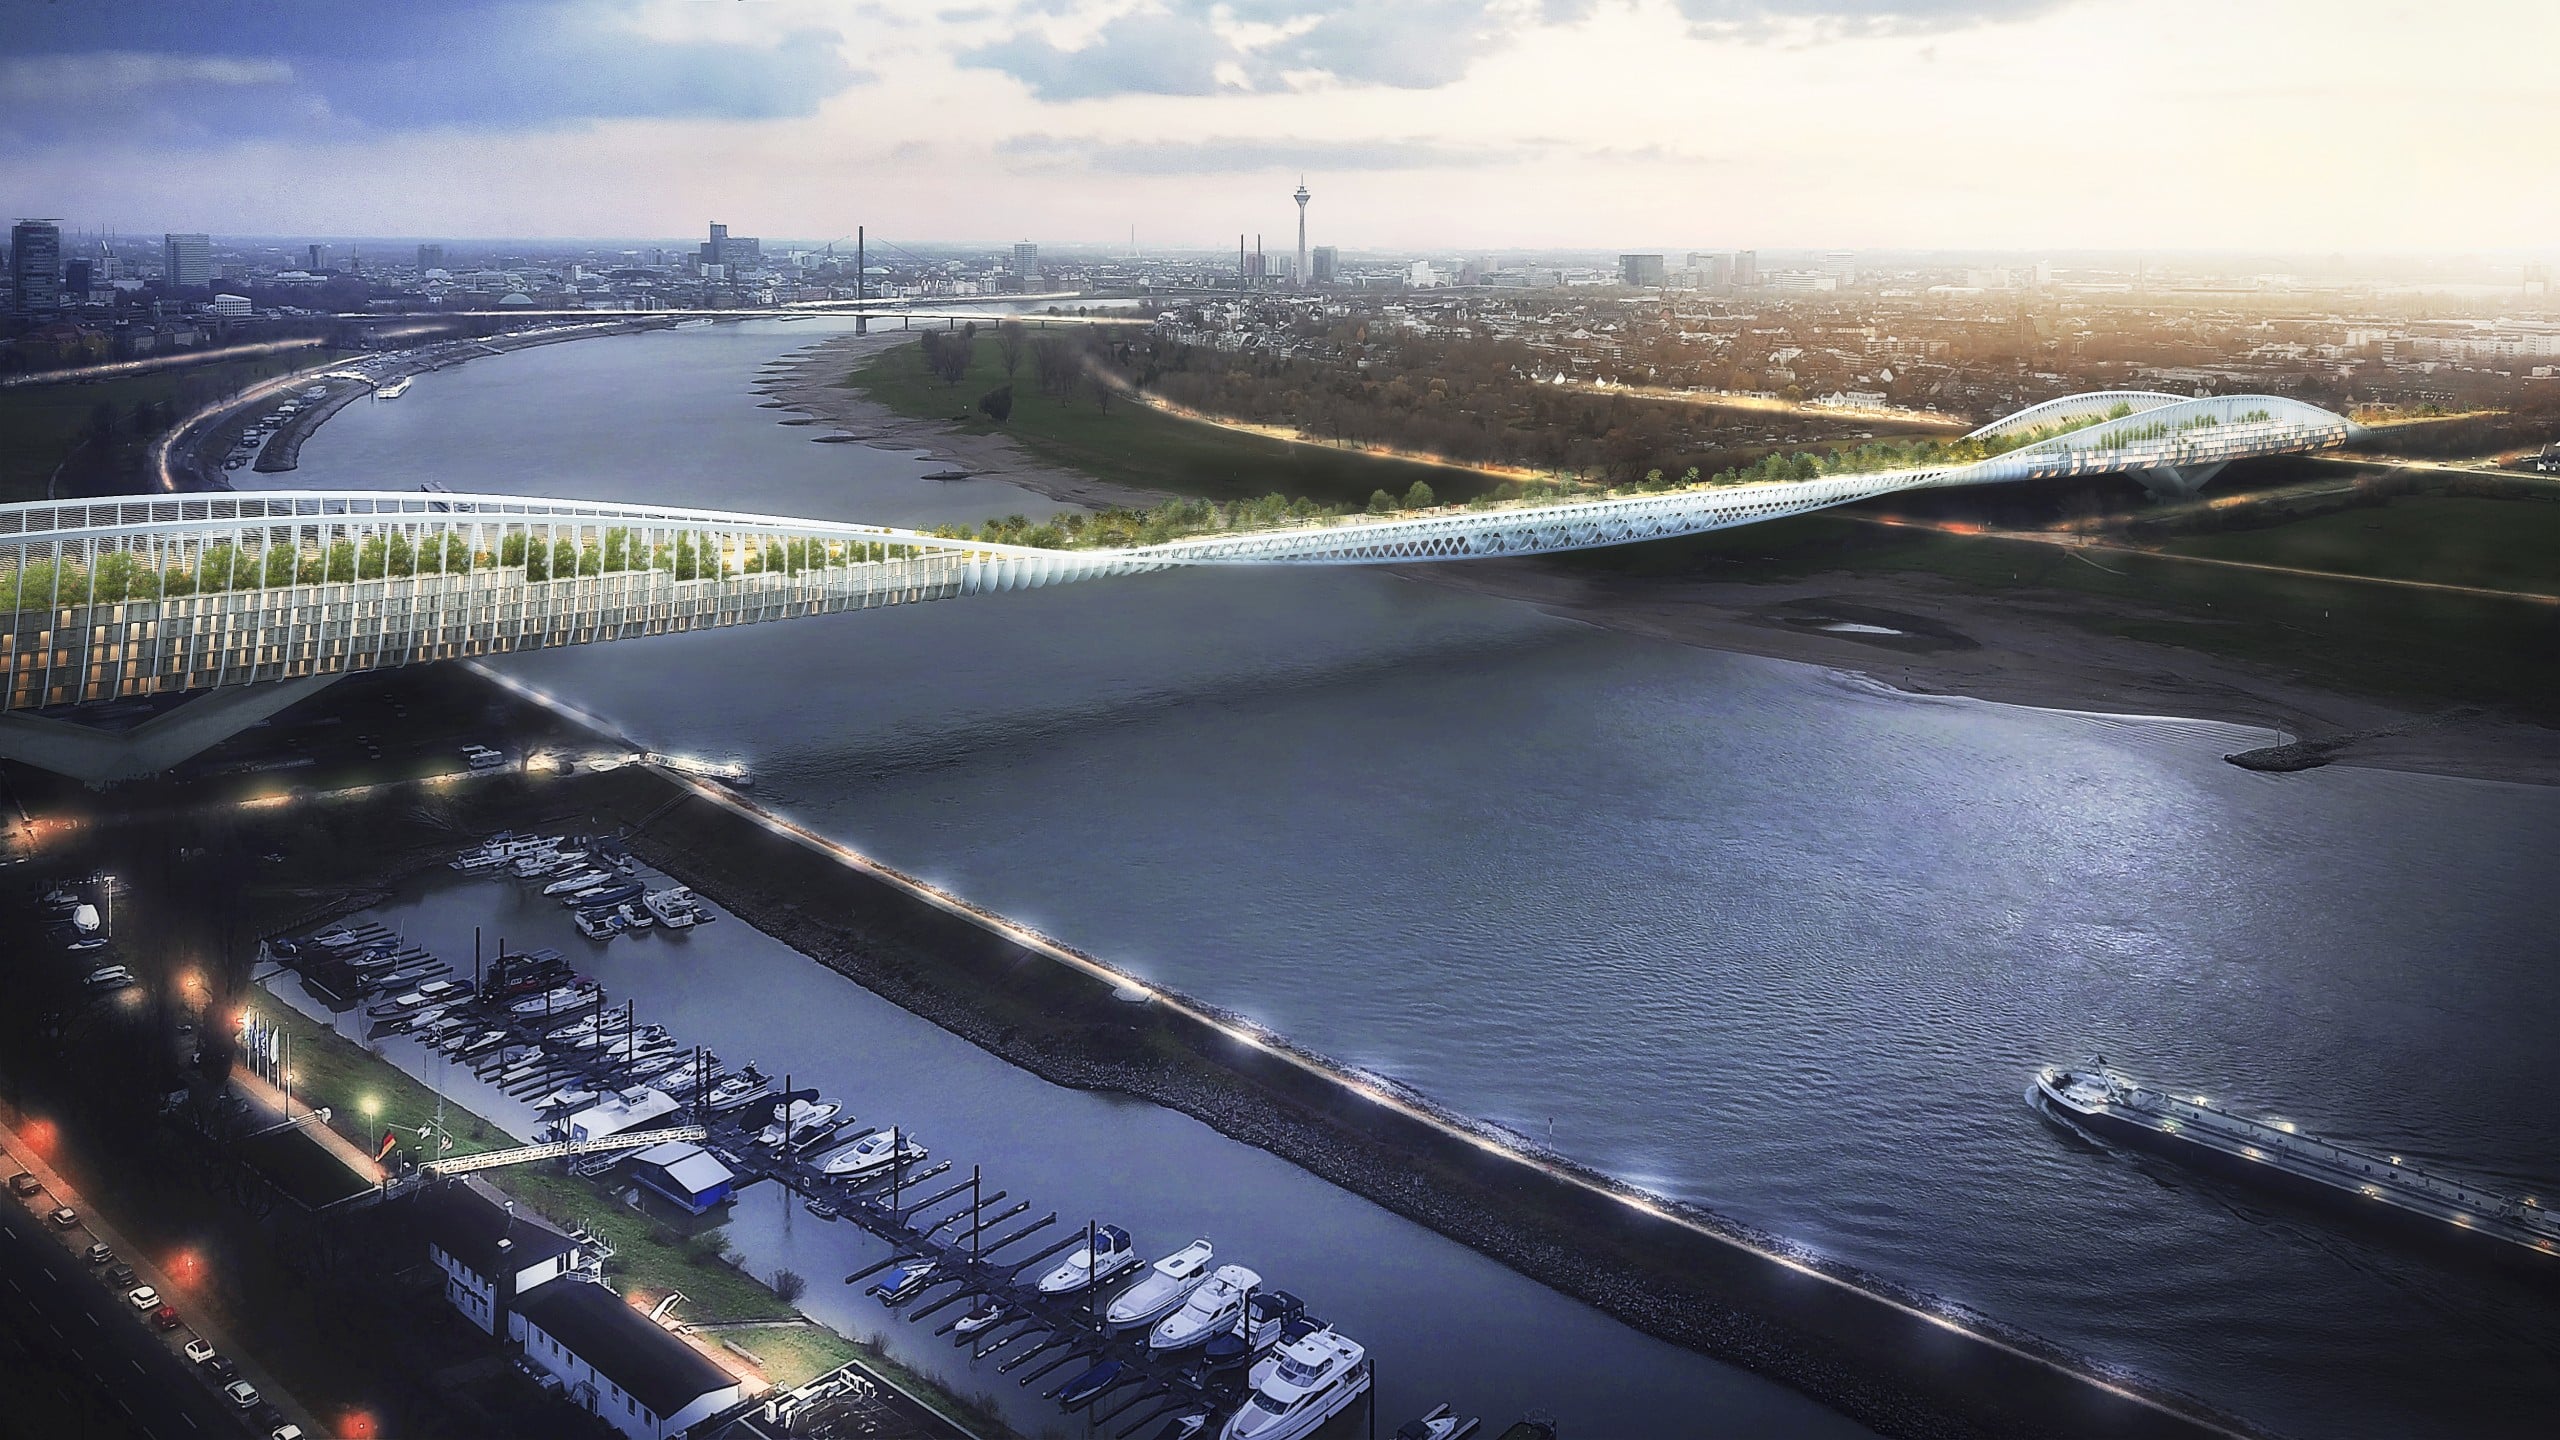 Der Initiativentwurf für eine Green Bridge über den Düsseldorfer Rhein ist vielversprechend. Coypright: Copyright Entwurf: RKW Architektur +, Visualisierung: Formtool, Anton Kolev